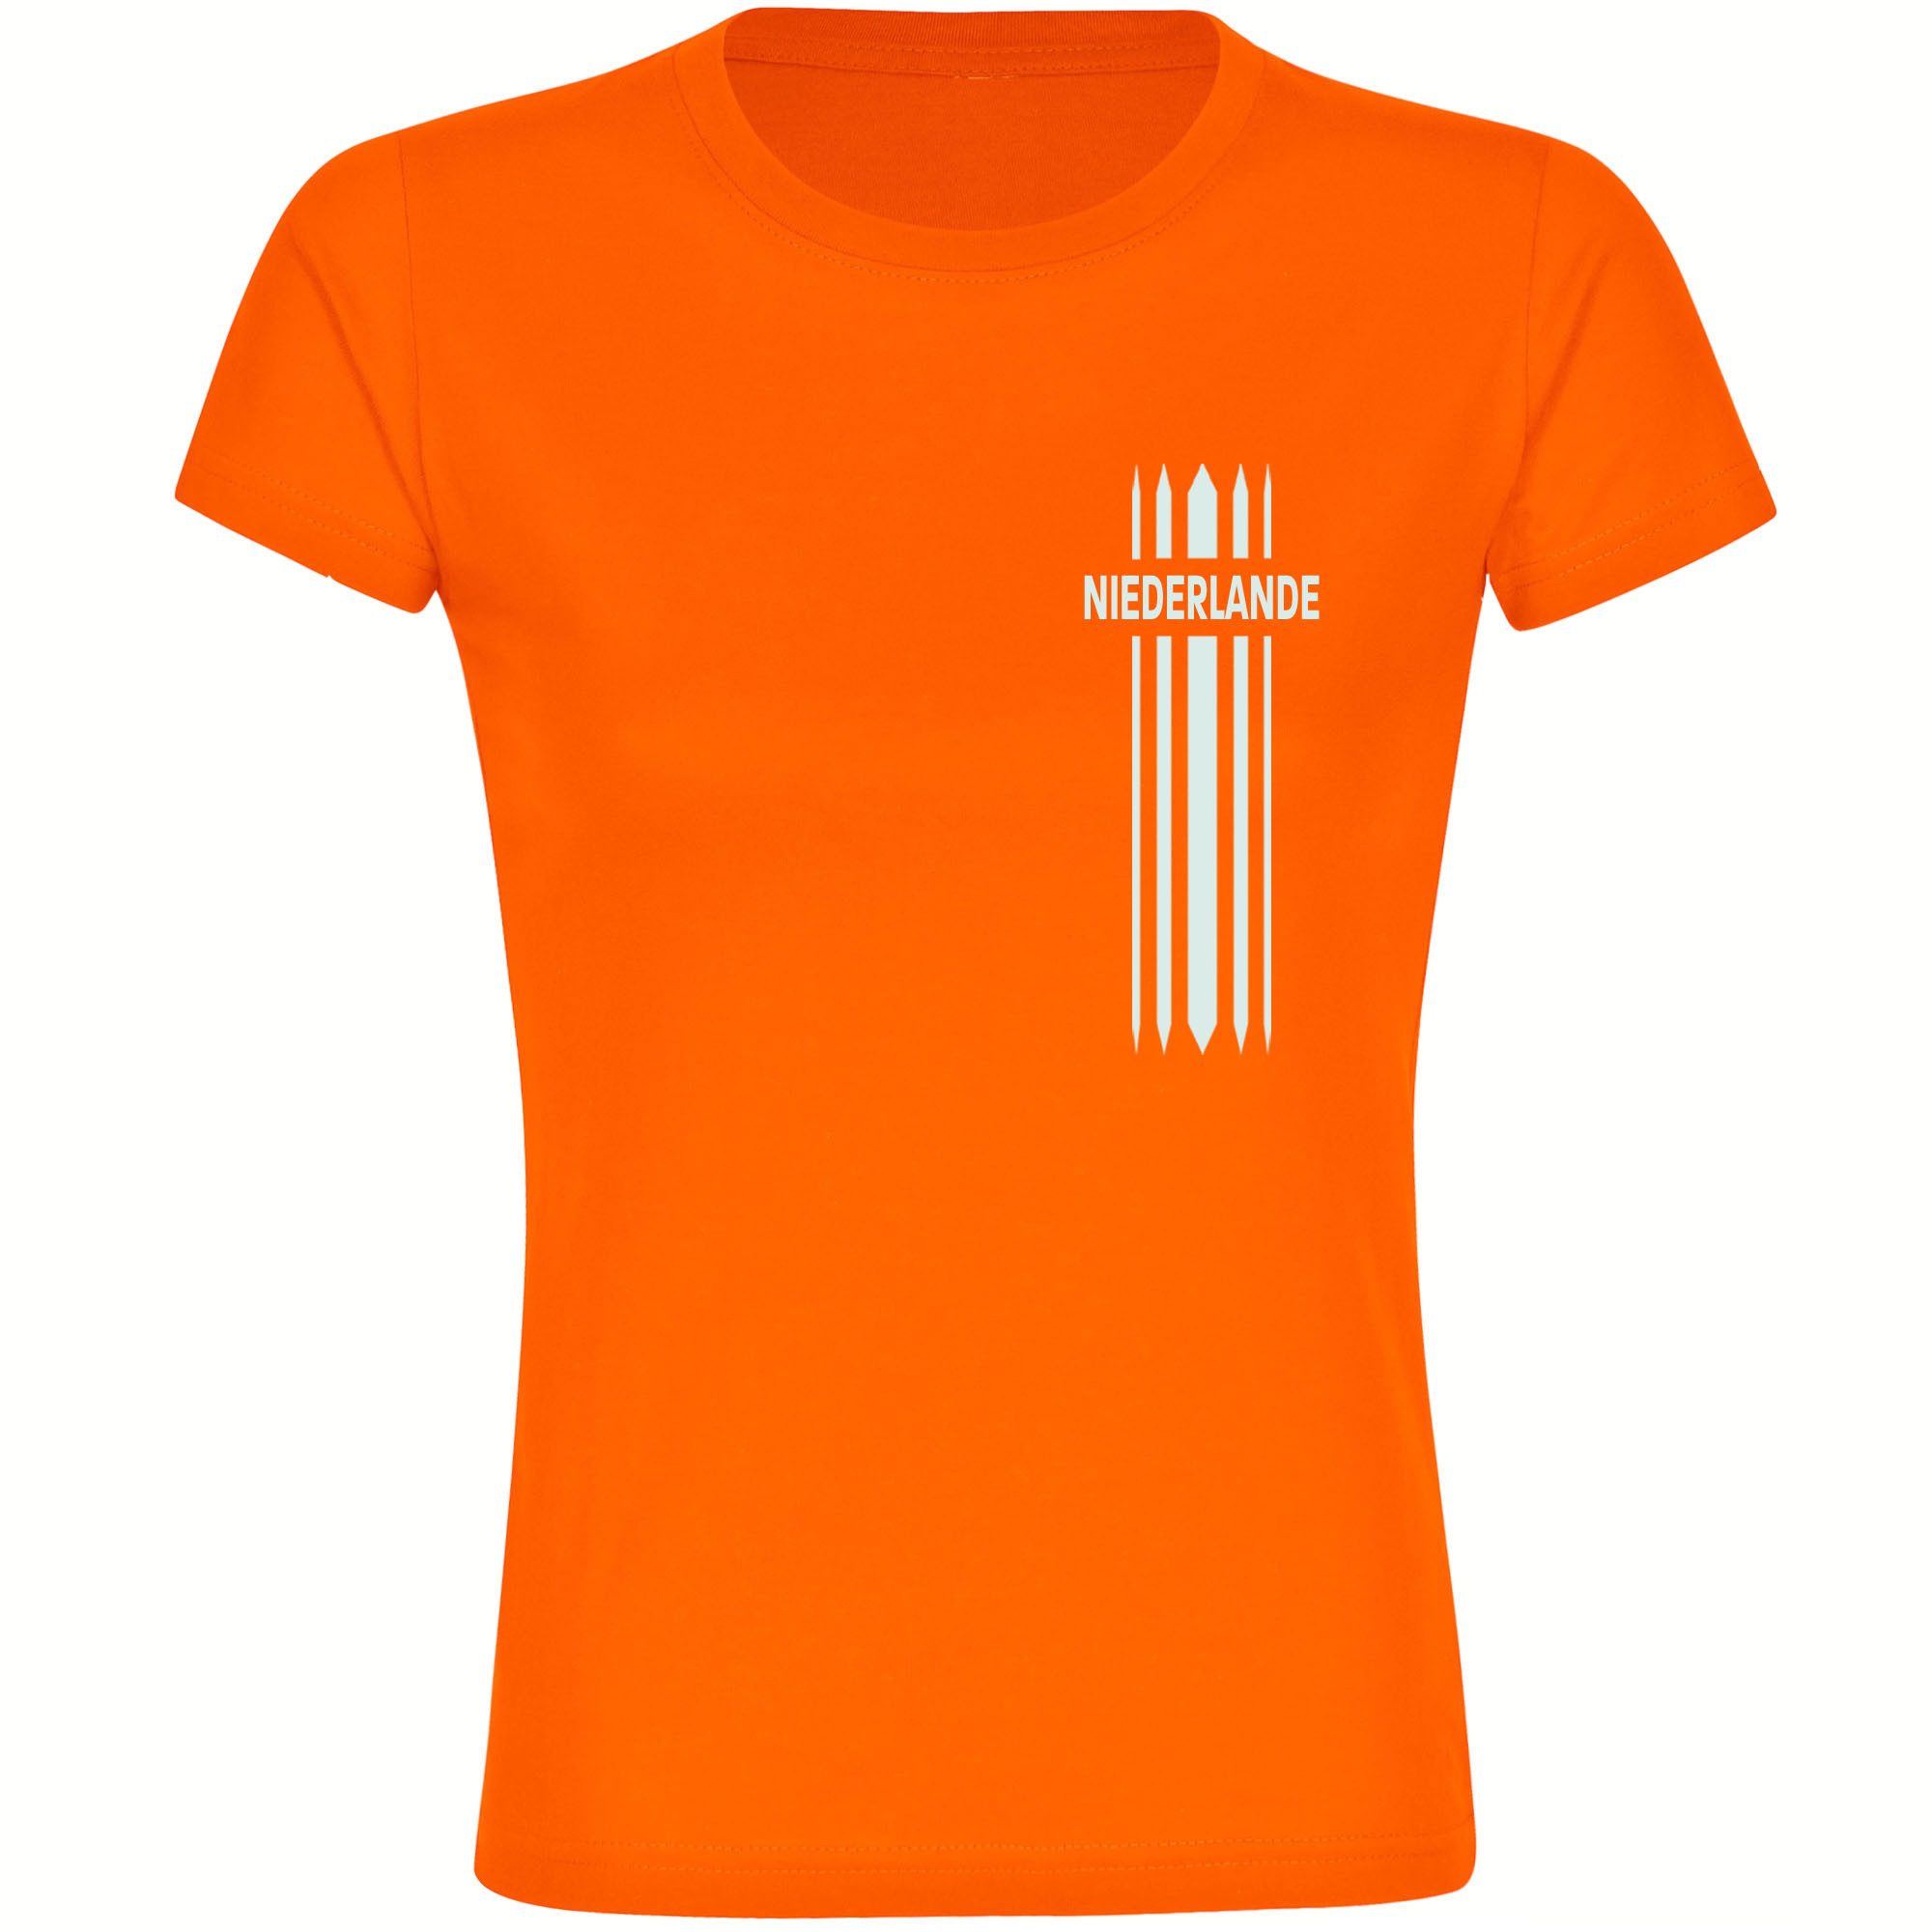 multifanshop T-Shirt Damen Niederlande - Streifen - Frauen